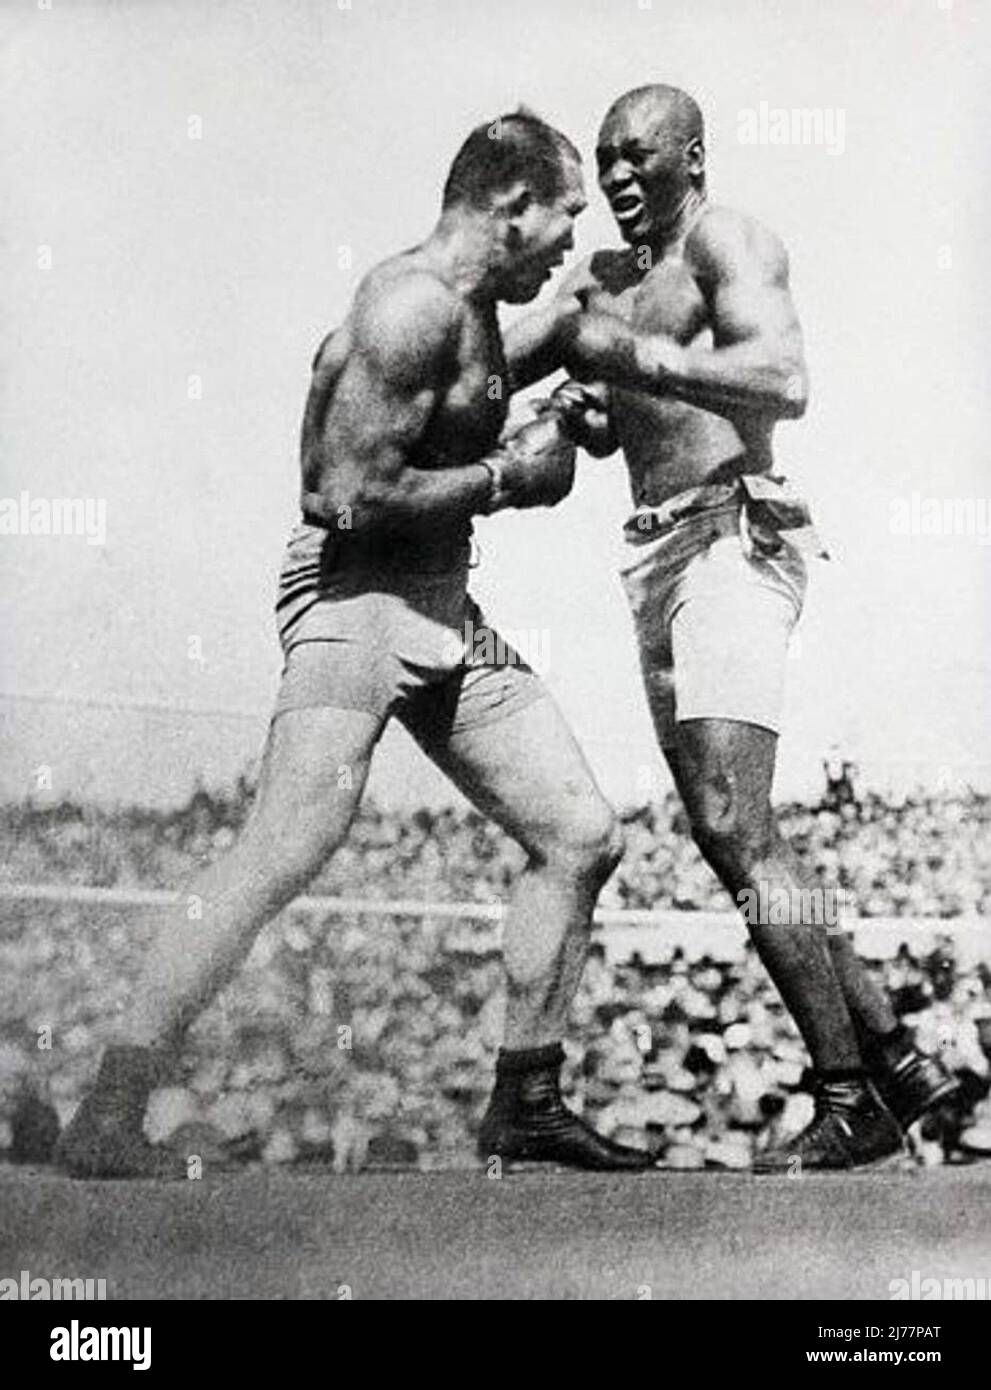 Titolo originale: Colpo d'azione di Jack Johnson che combatte Jim Jeffries a Reno nel 1910. Jeffries è stato battuto in 15 turni. 1919 Reno, Nevada, Stati Uniti Foto Stock